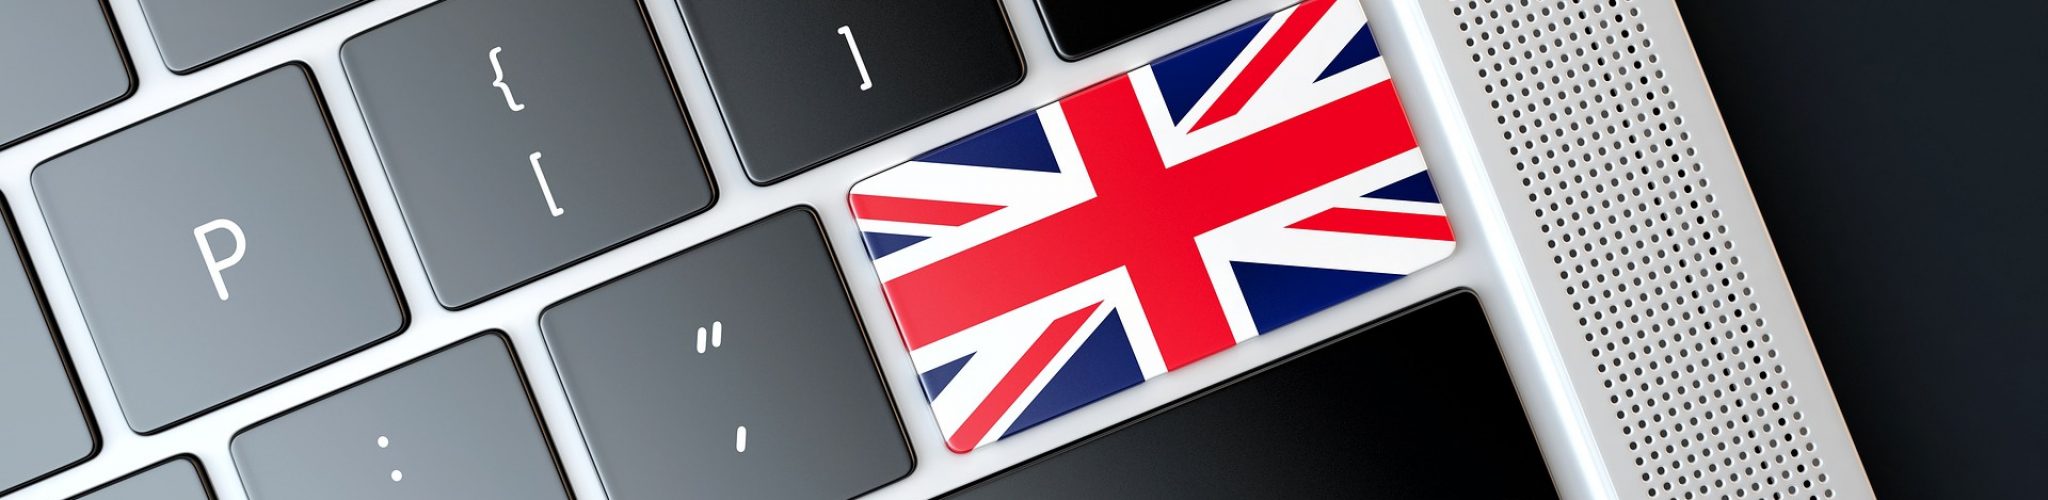 bouton de clavier d'ordinateur aux couleurs du drapeau d'Angleterre